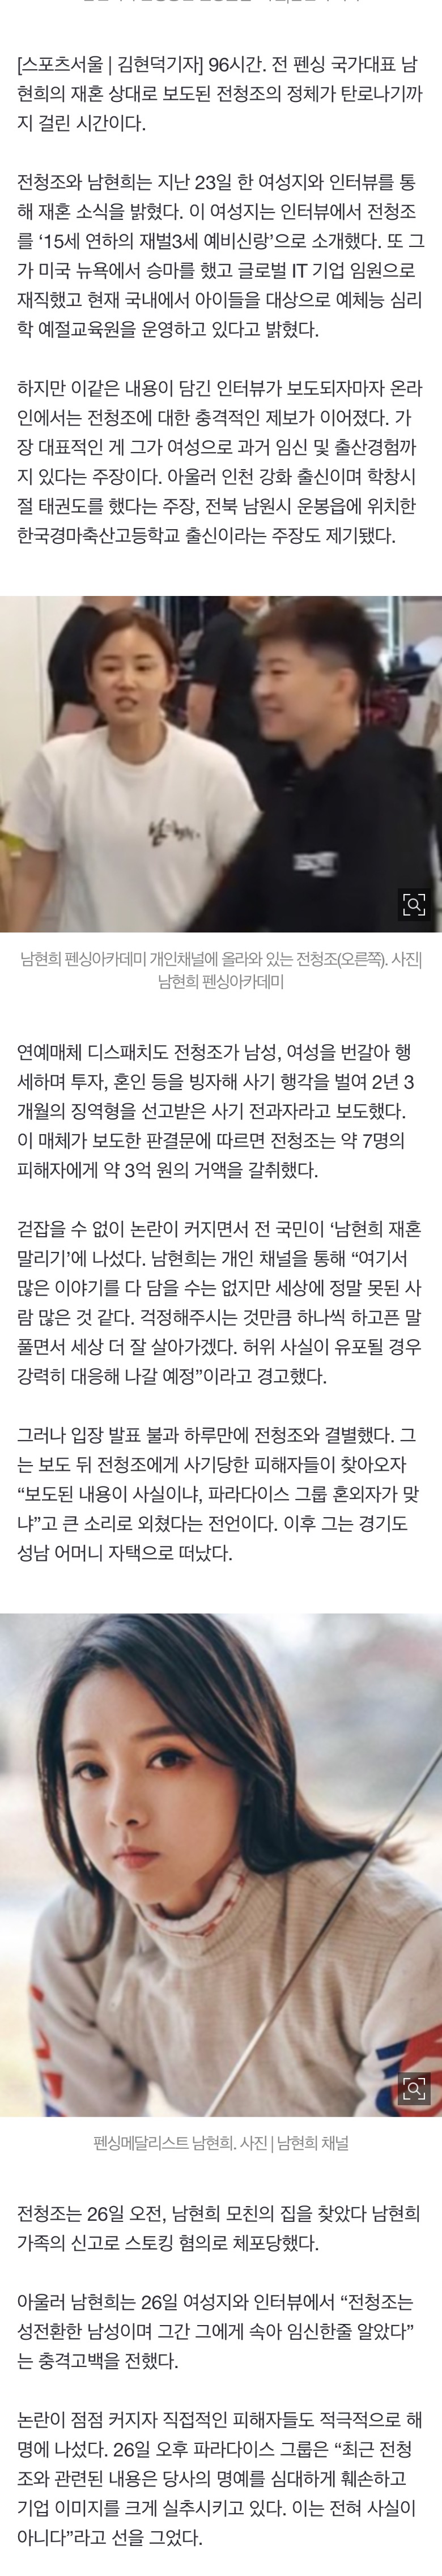 [정보/소식] 남현희-전청조, 결혼 발표부터 스토킹 혐의 경찰 체포까지 96시간의 기록 | 인스티즈